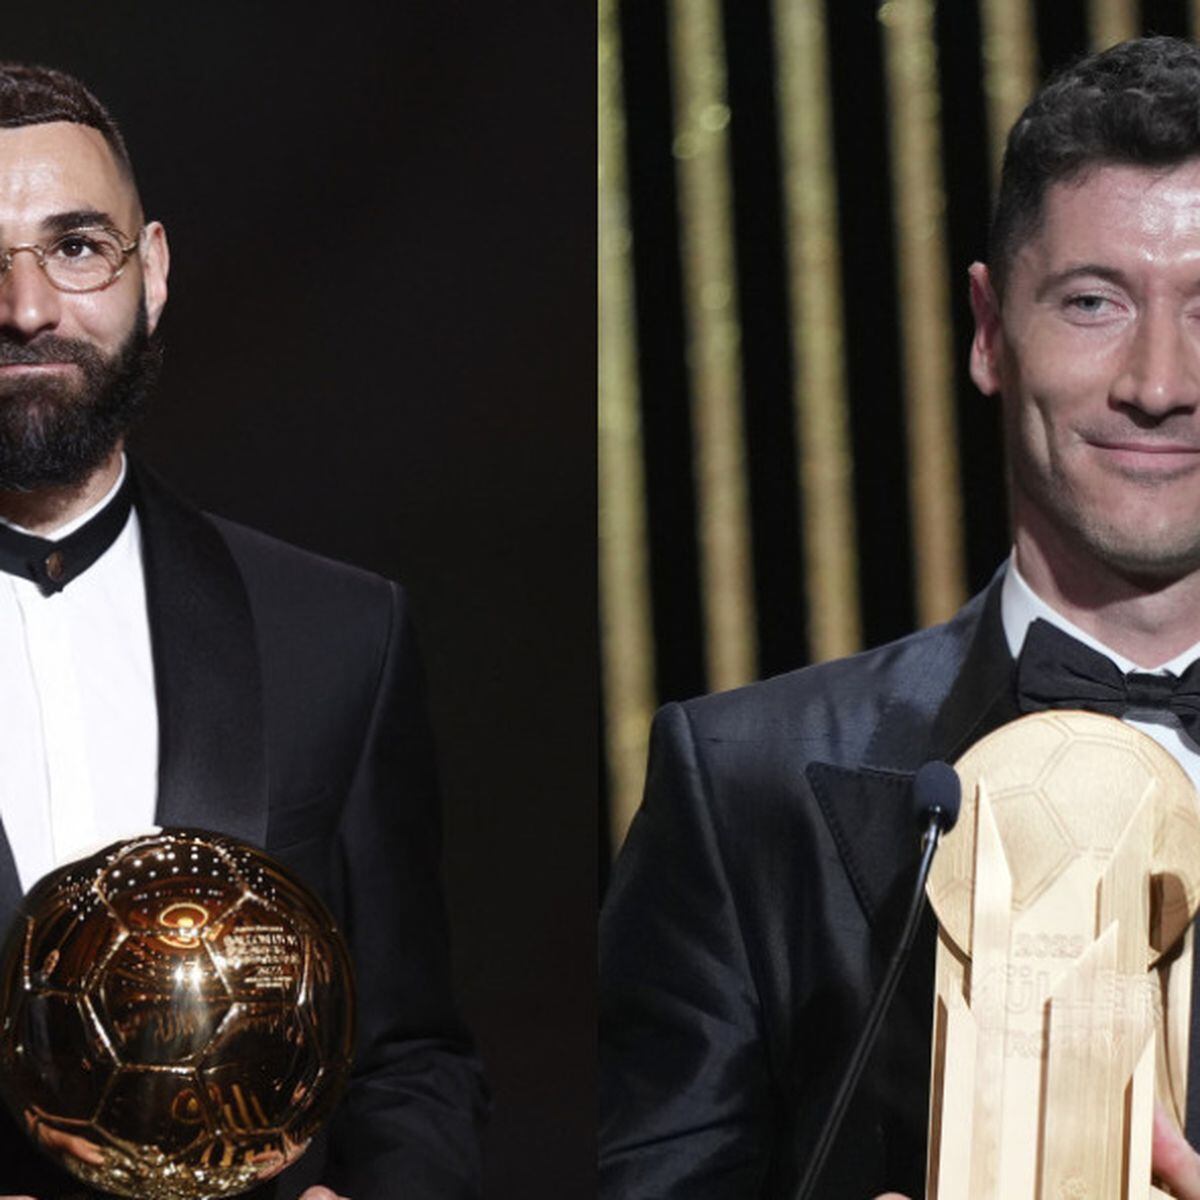 Bola de Ouro e The Best: ganhadores jamais conquistaram a Copa do